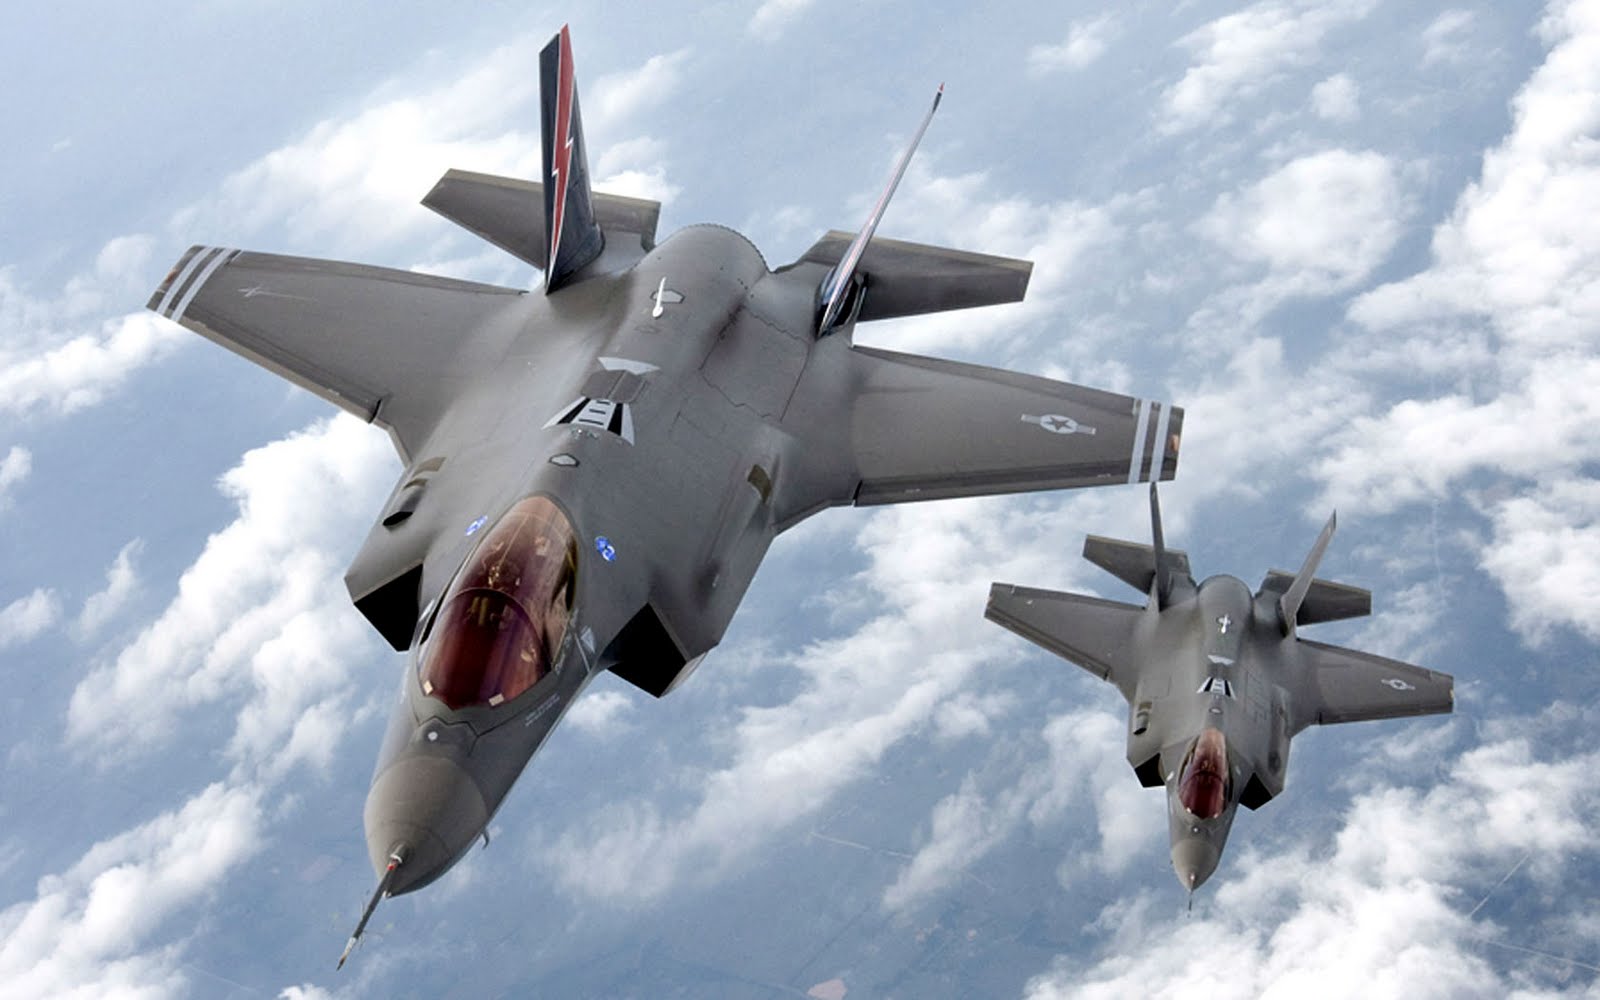 Νέα μαχητικά αεροσκάφη θα παραδώσουν στο Ισραήλ οι ΗΠΑ το 2016